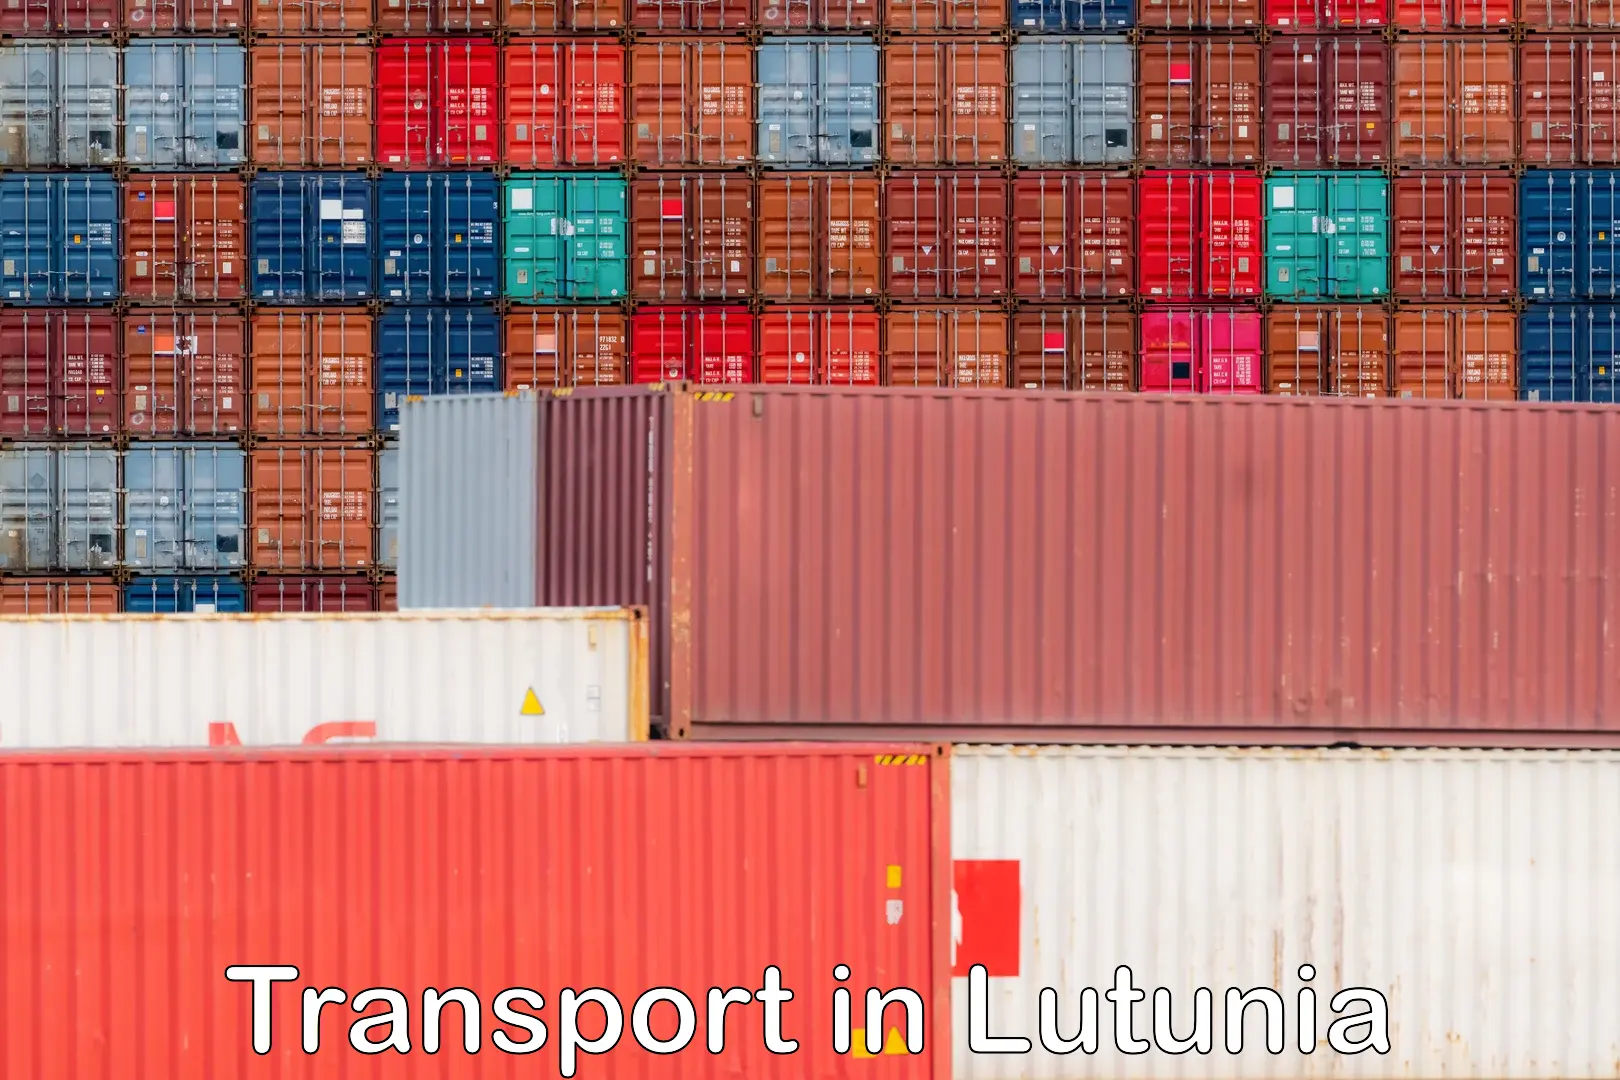 Furniture transport service in Lutunia